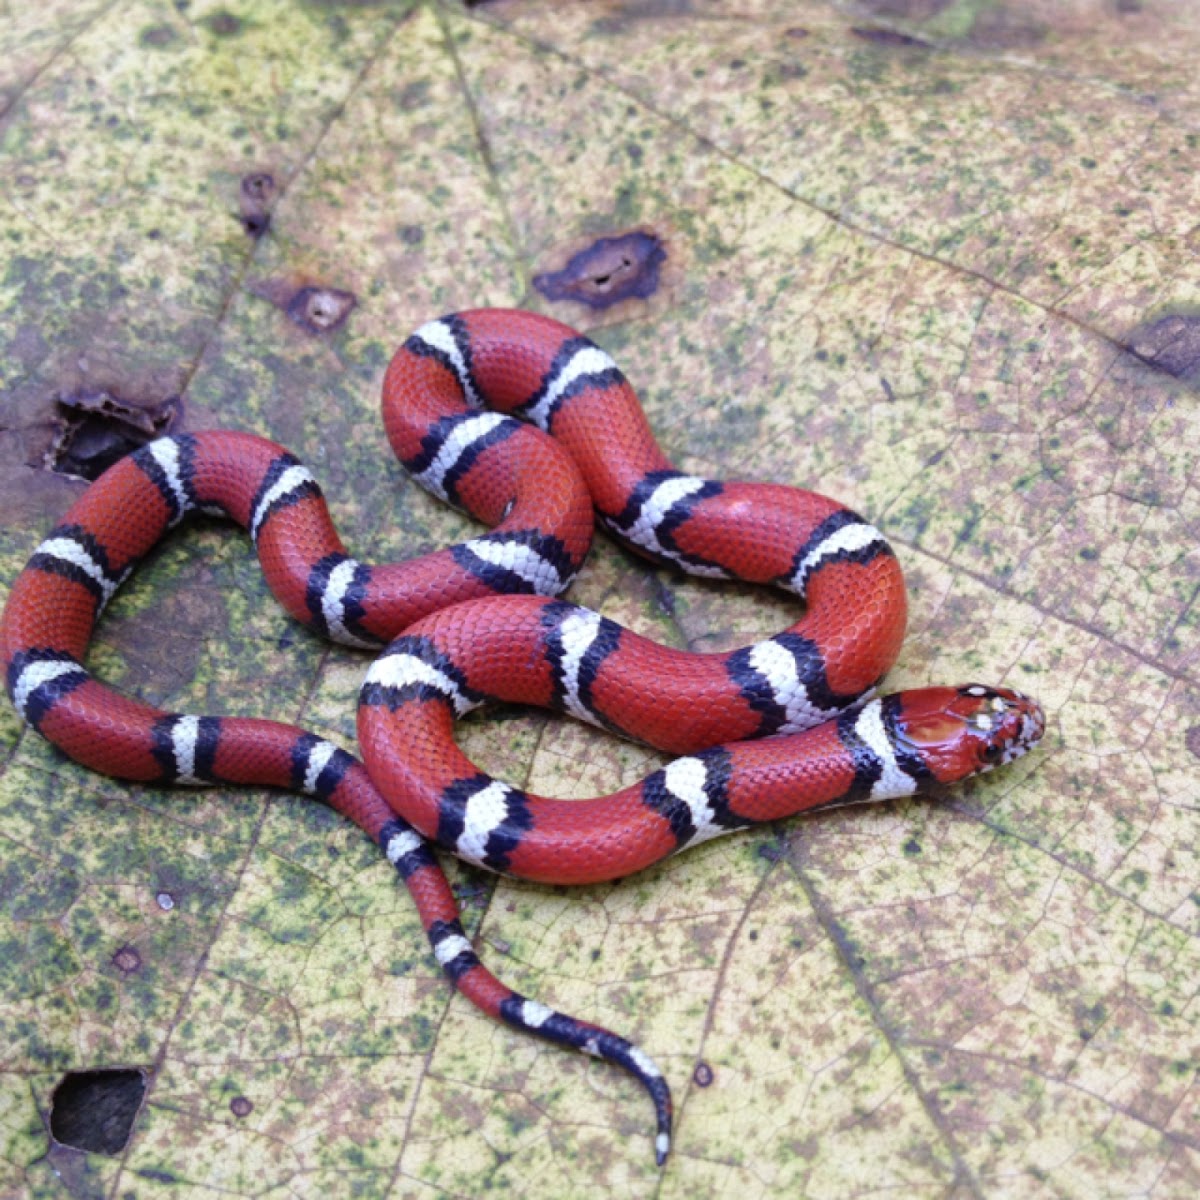 Red milk snake